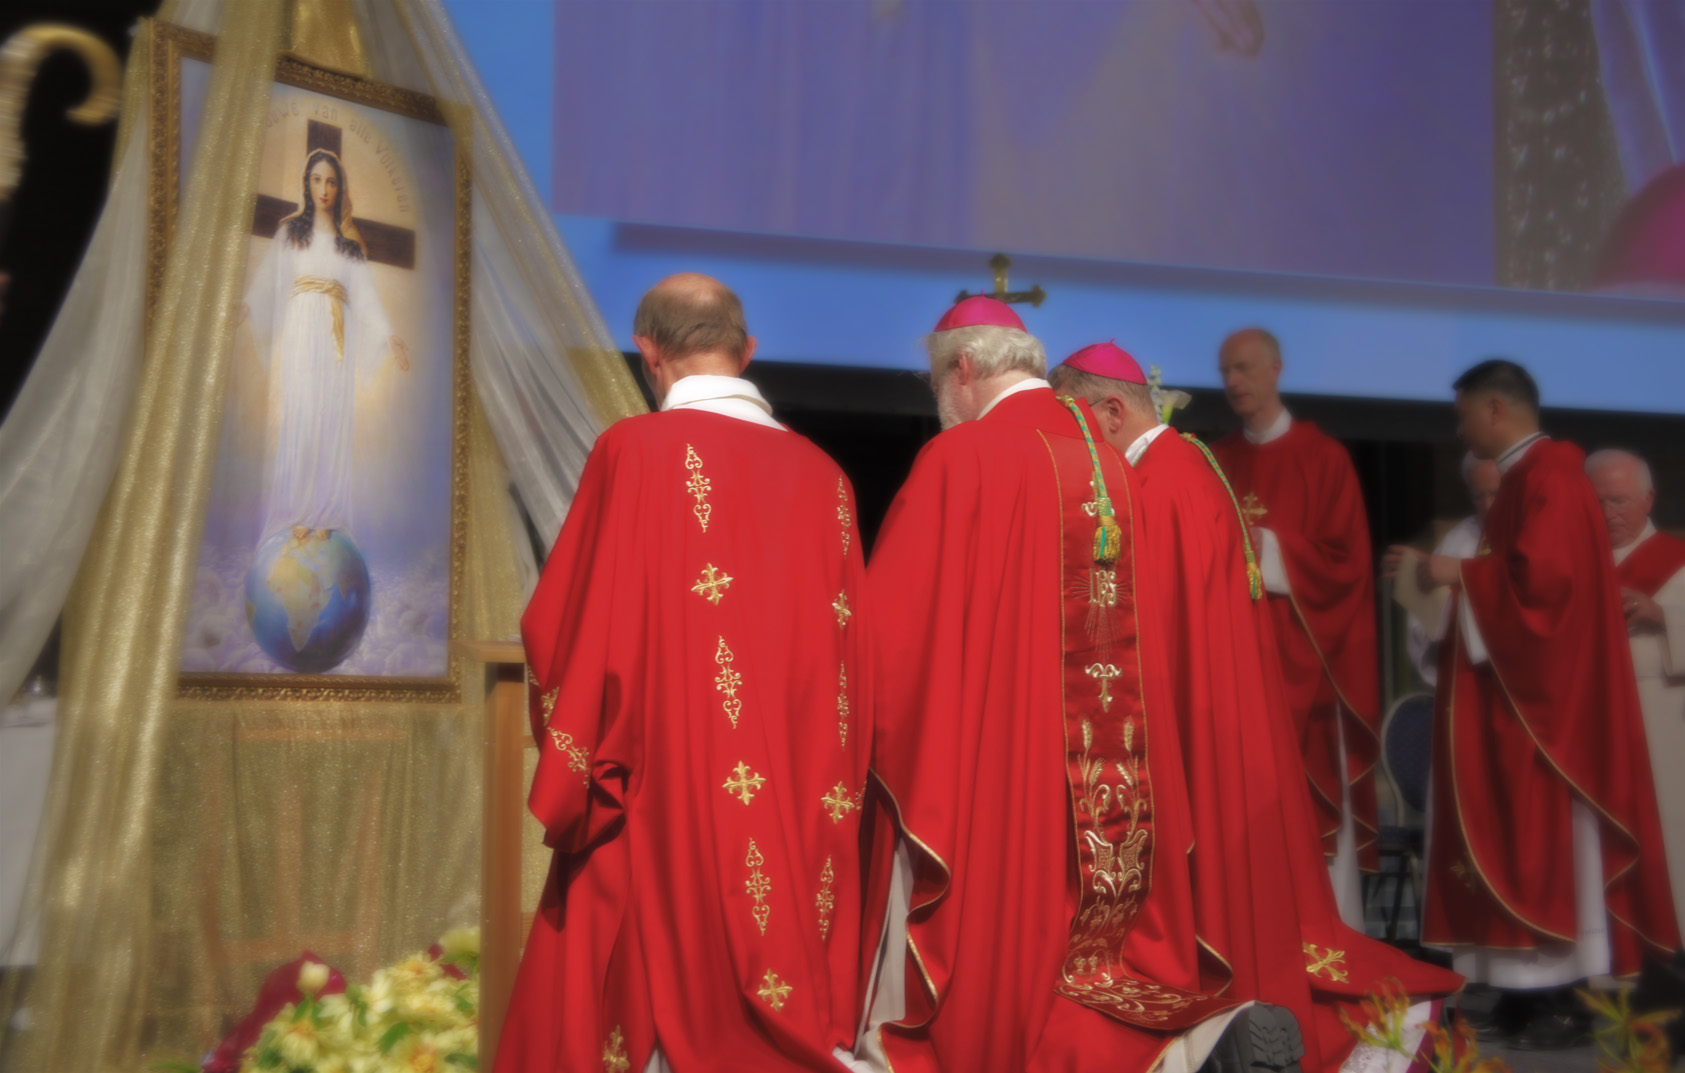 Aparición Auténtica de la Virgen María Anunció Próximas Amenazas Mundiales [y dijo como prevenirlas]